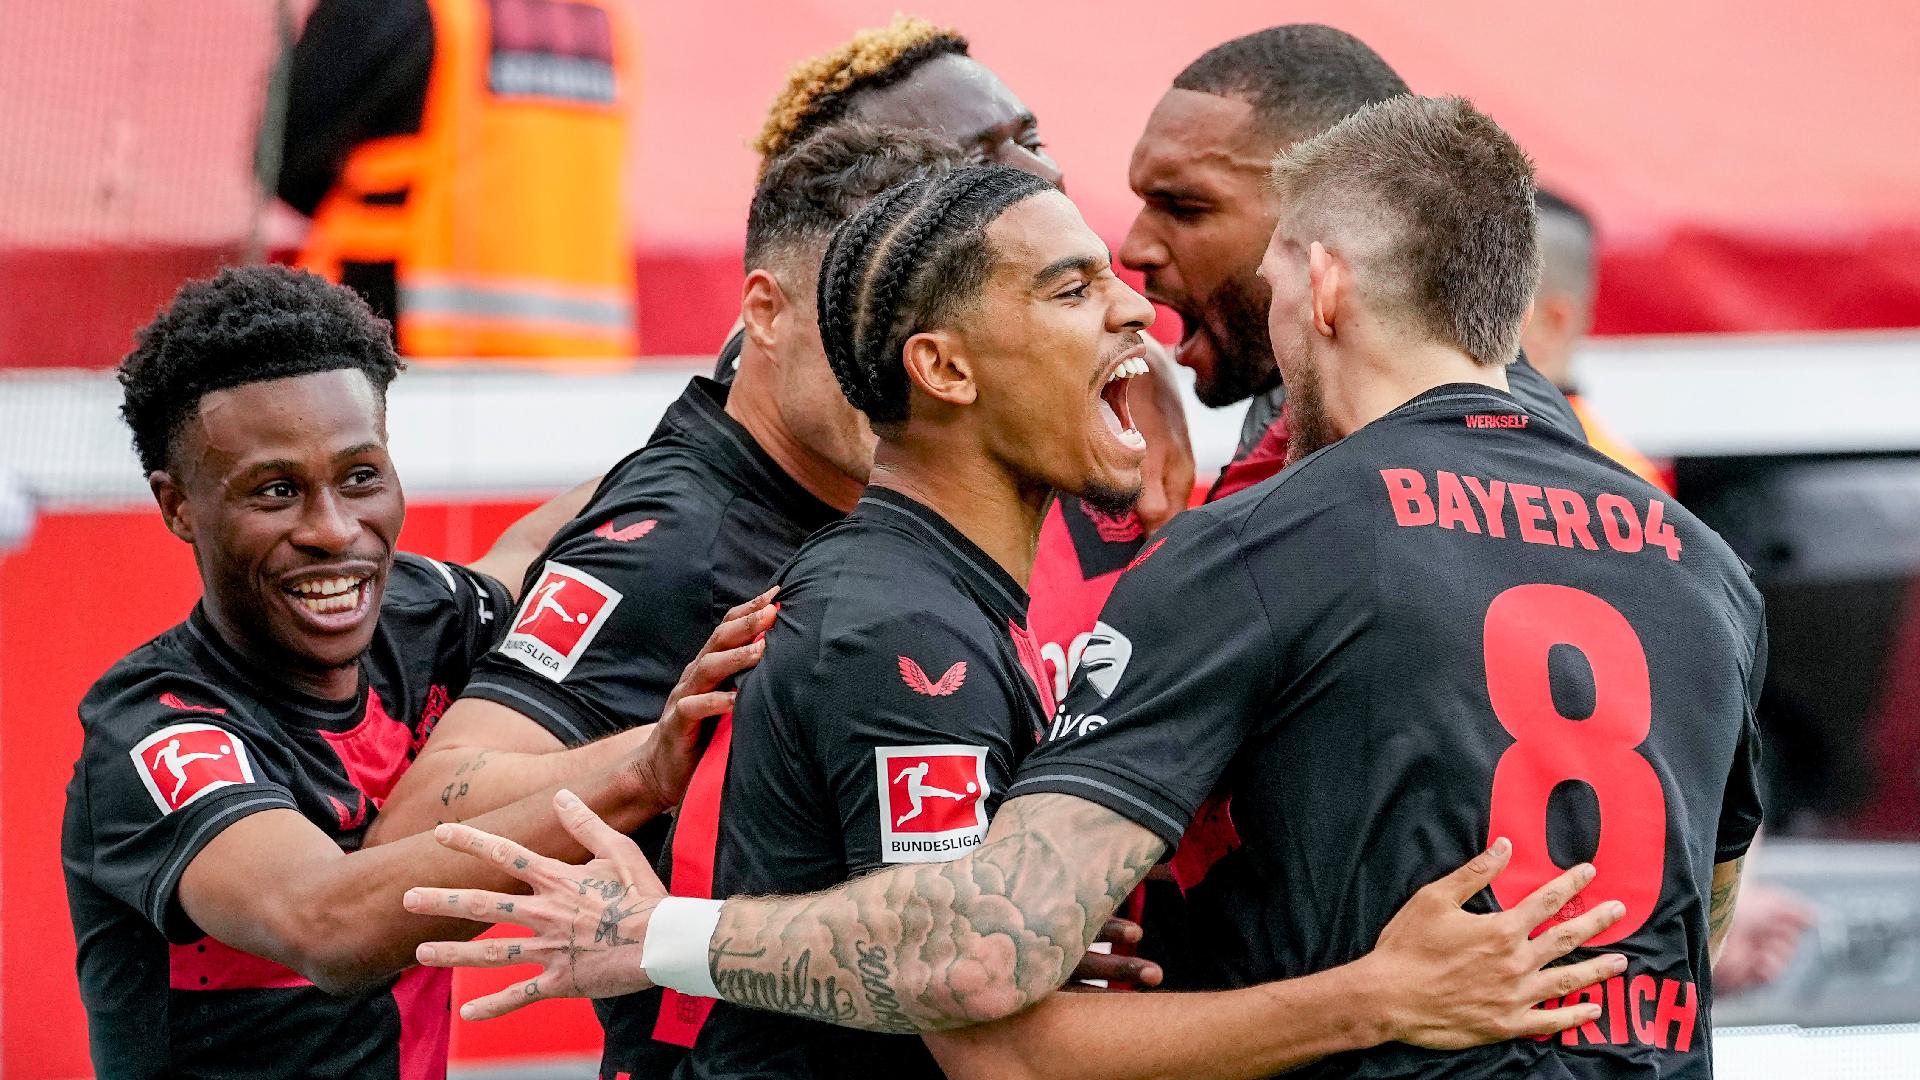 Bayer Leverkusen wrap up title in style by hammering Werder Bremen